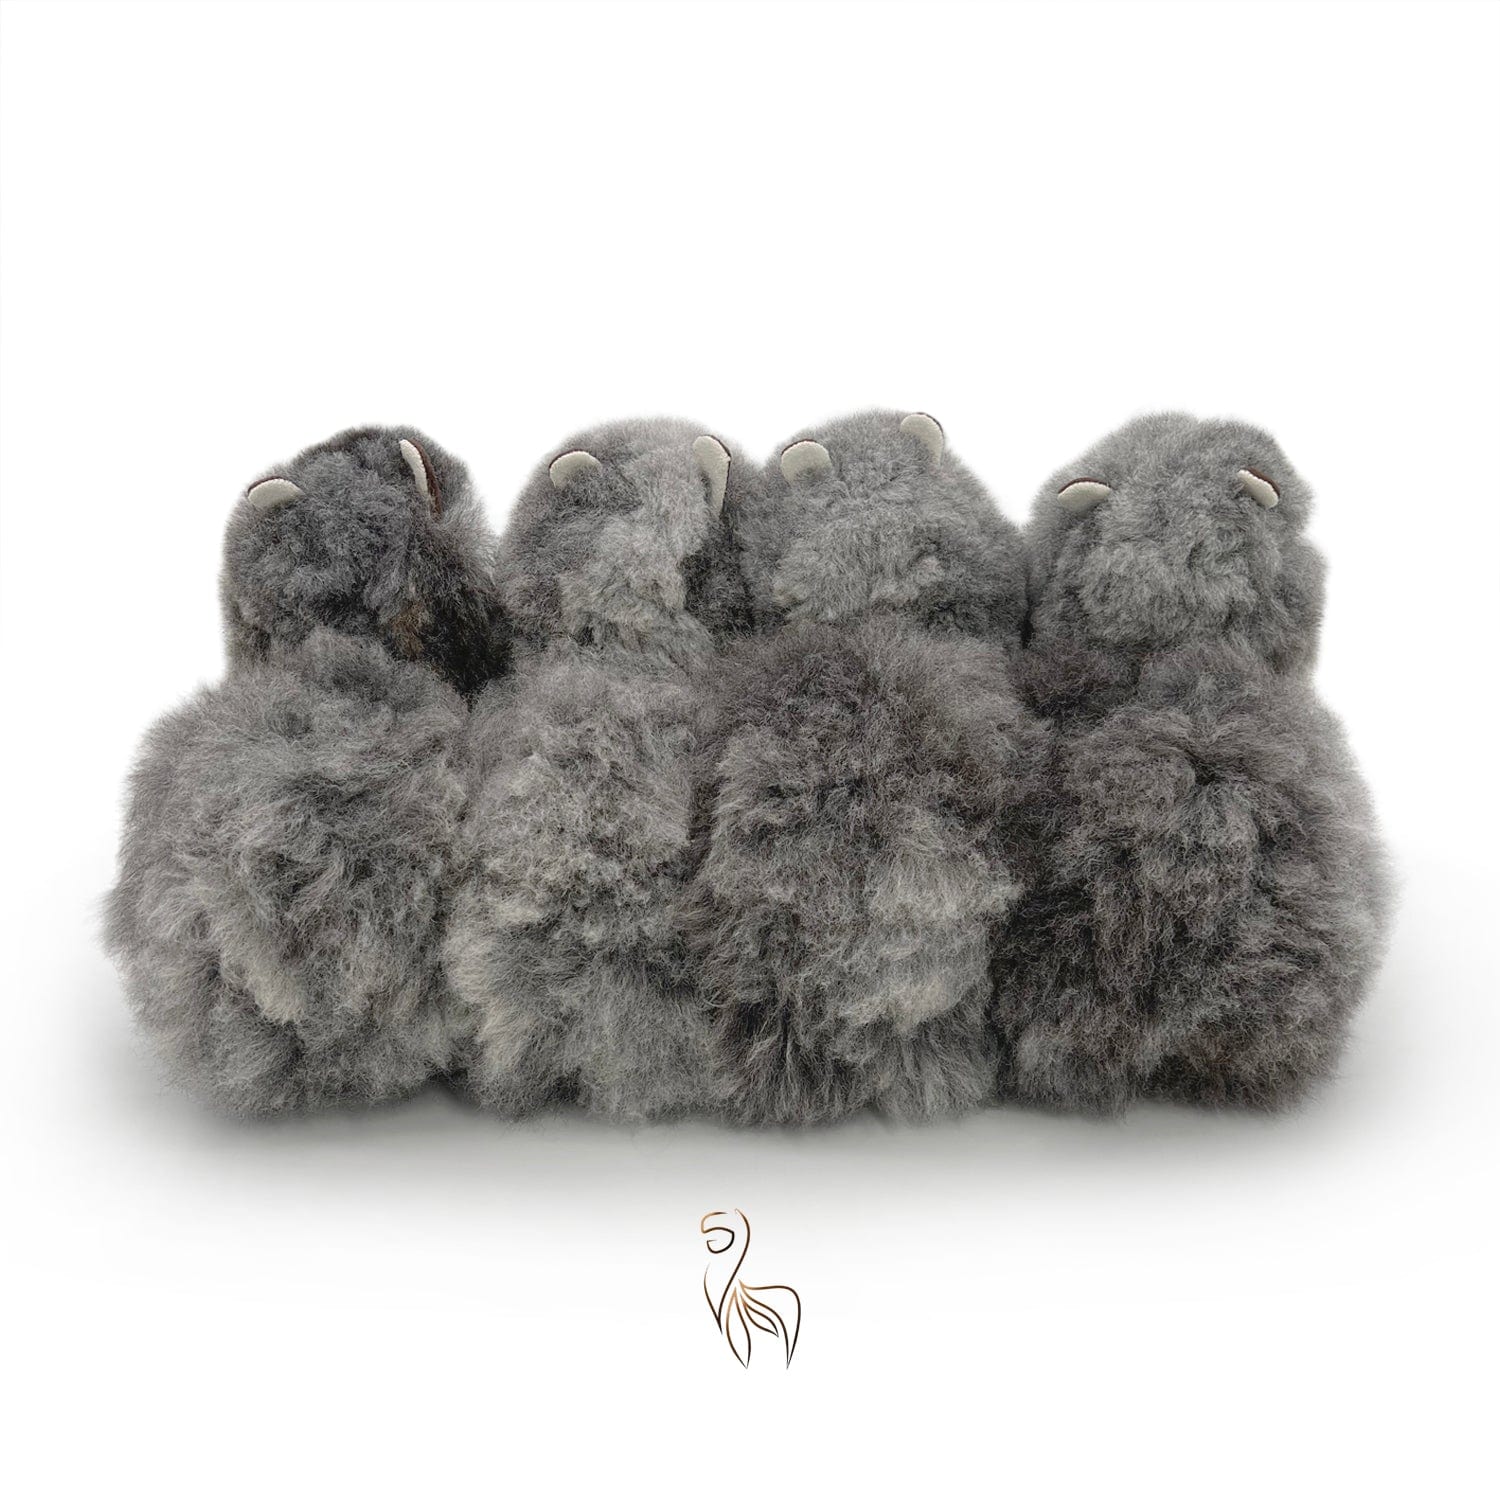 Lupo oscuro - Piccolo giocattolo alpaca (23 cm) - Edizione limitata